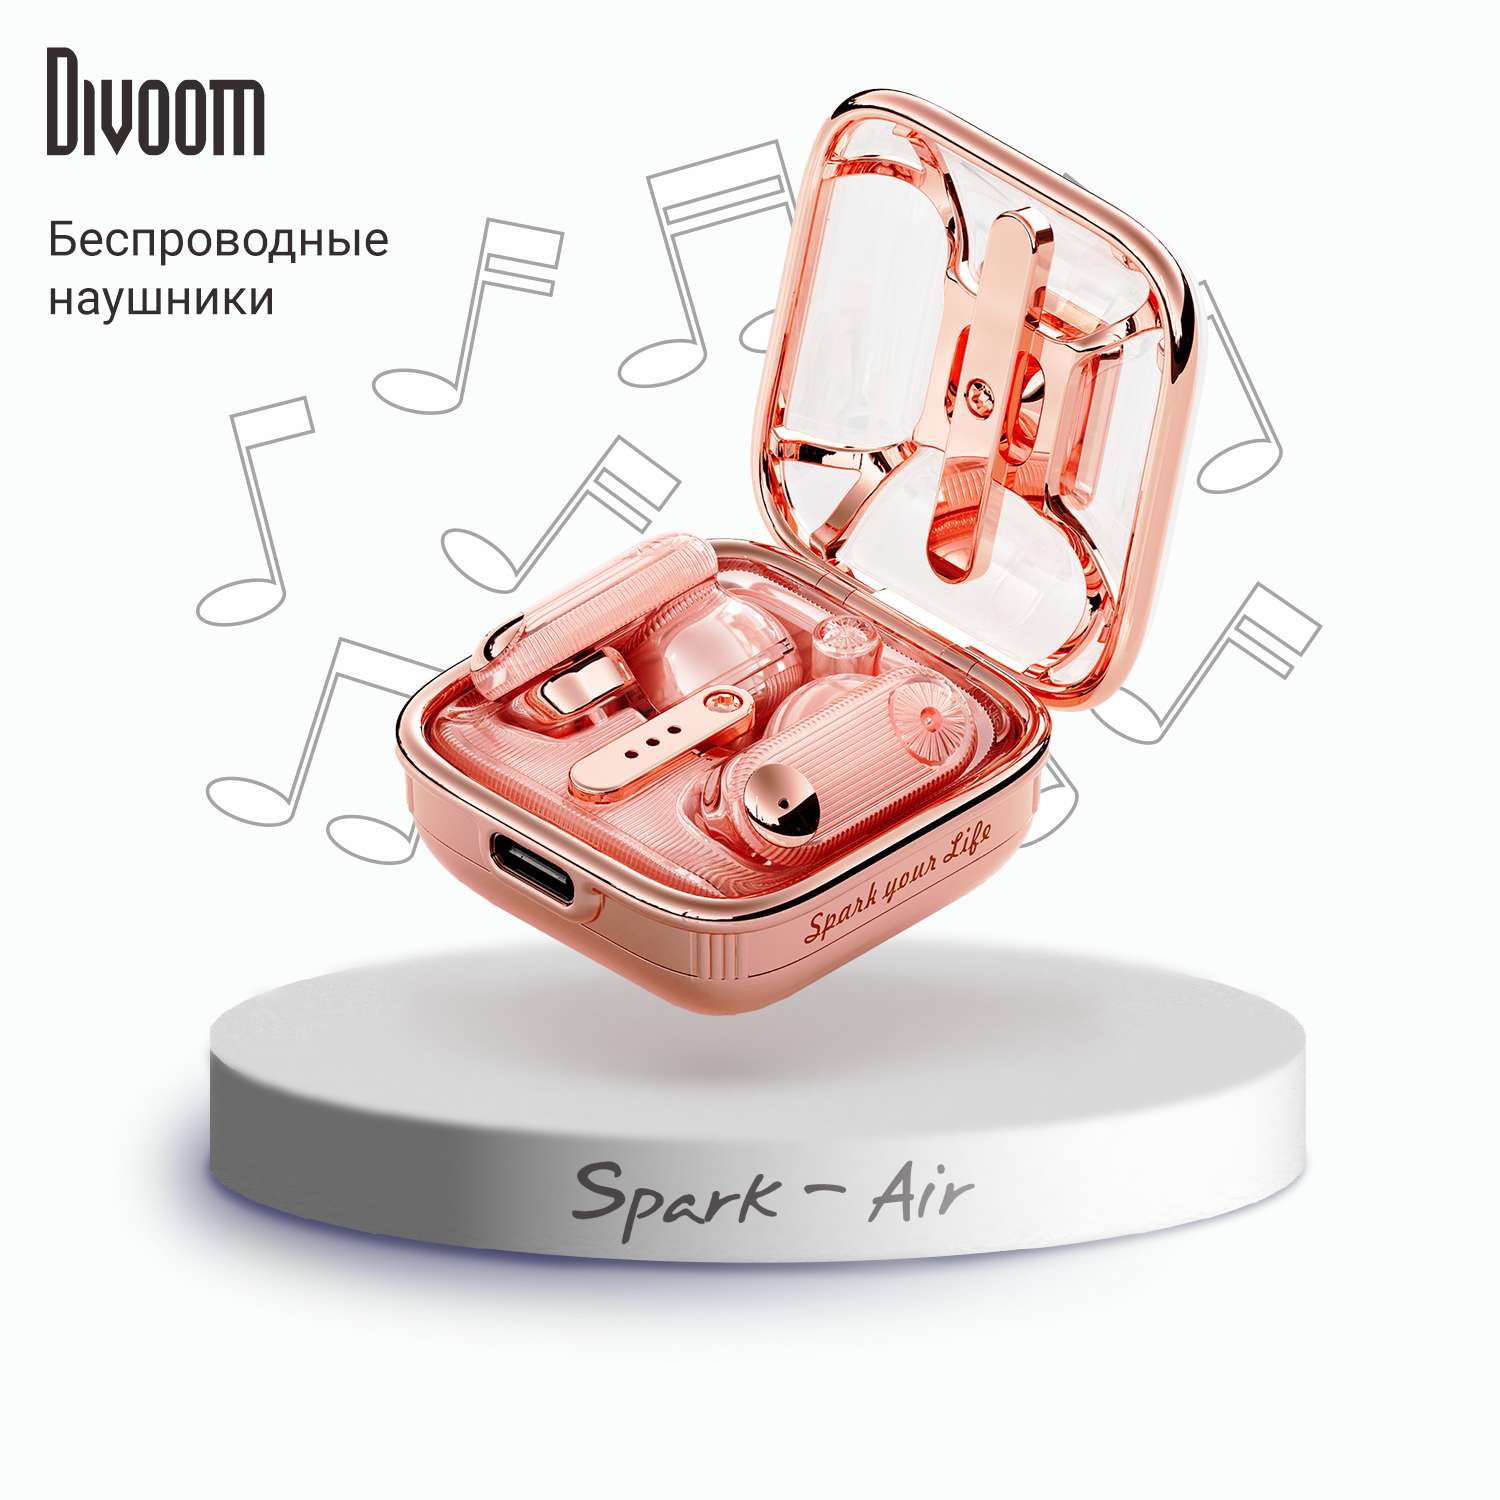 Наушники беспроводные DIVOOM Spark-Air Pink - фото 1